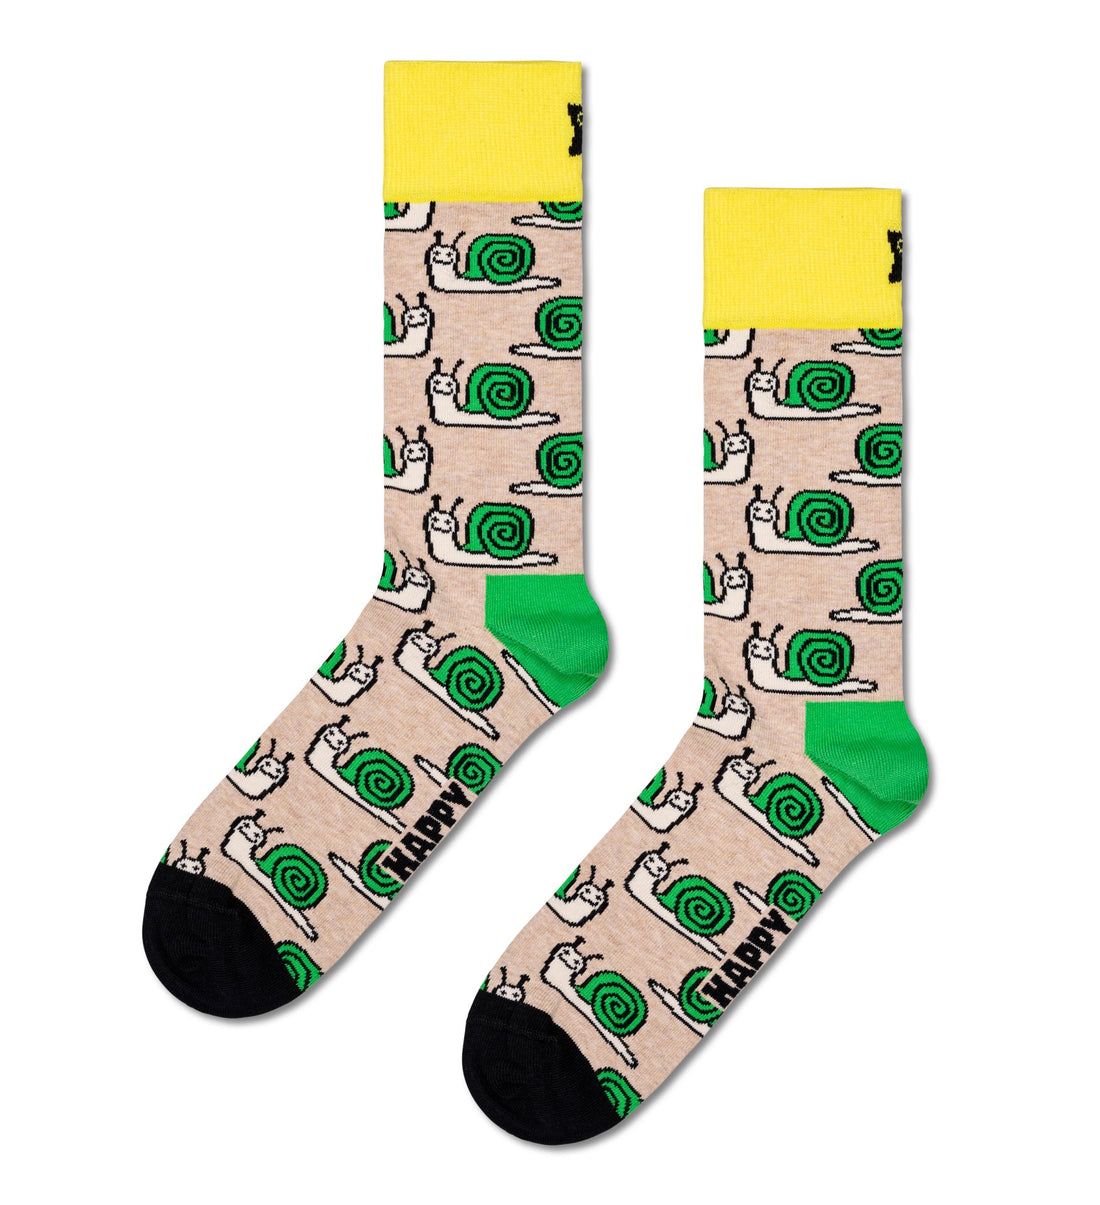 Happy Socks - Snail Sock